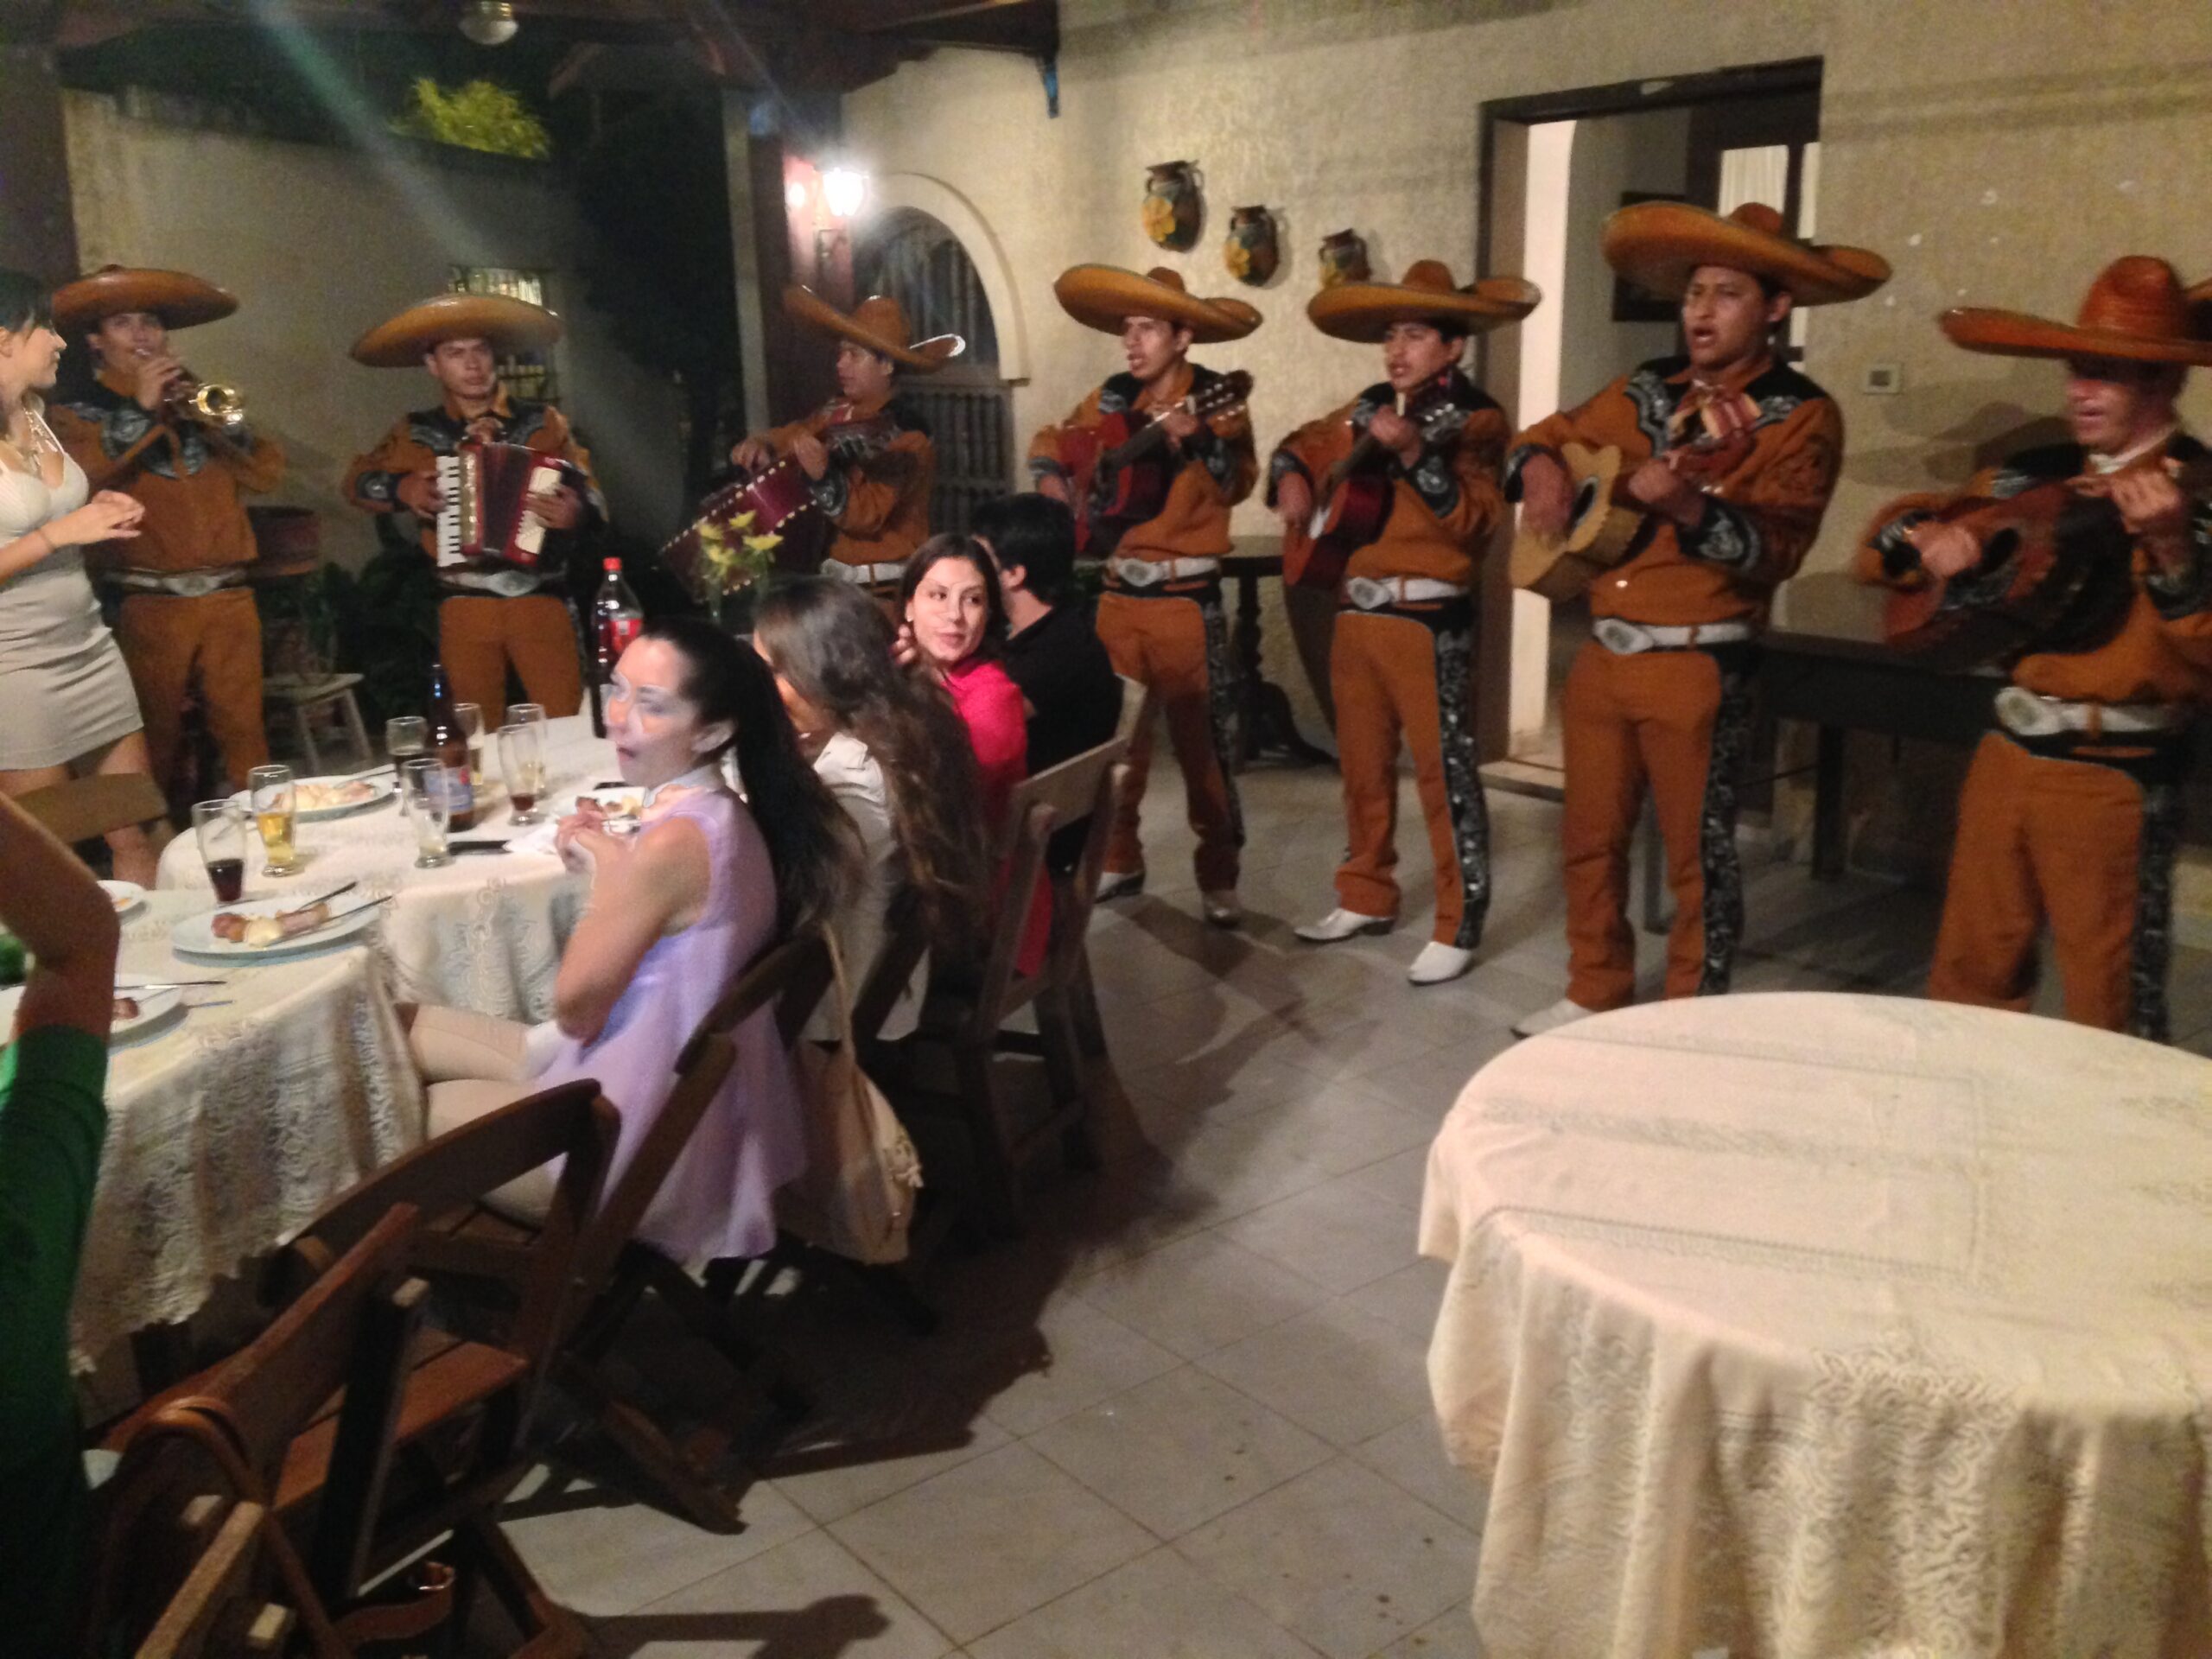 A mariachi band entertains at a Bolivian birthday party.